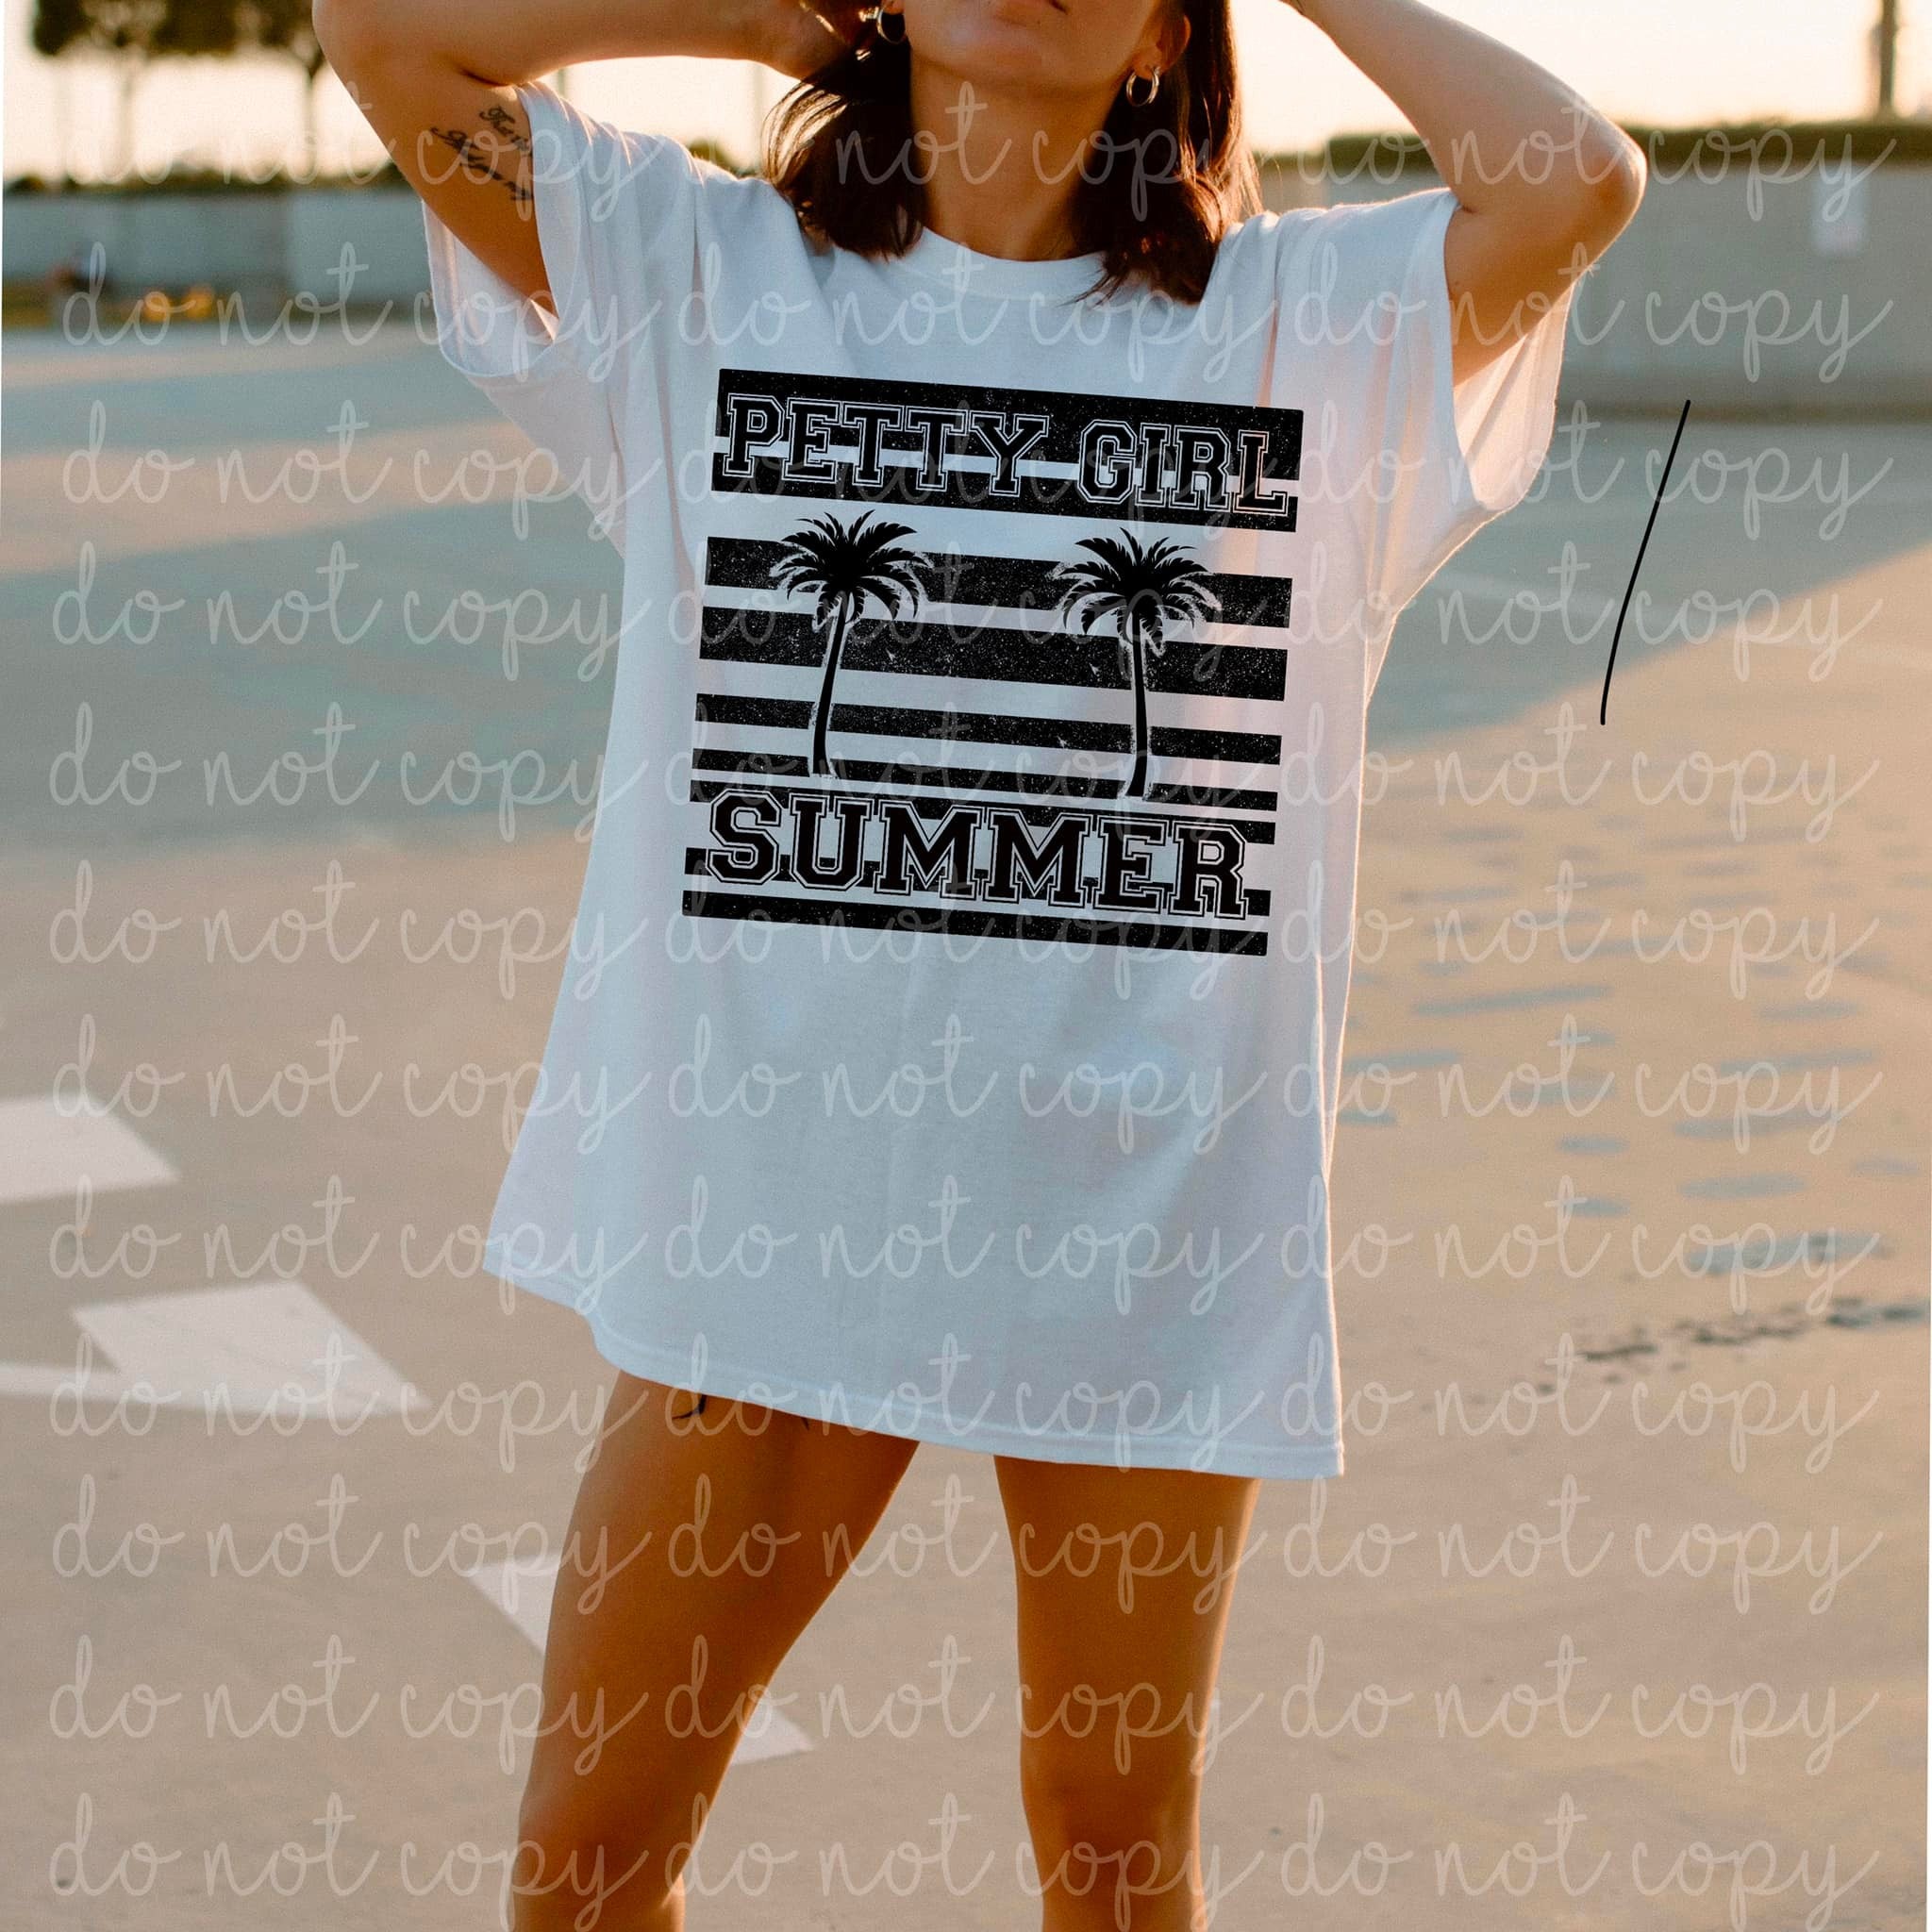 Petty Girl Summer T shirt